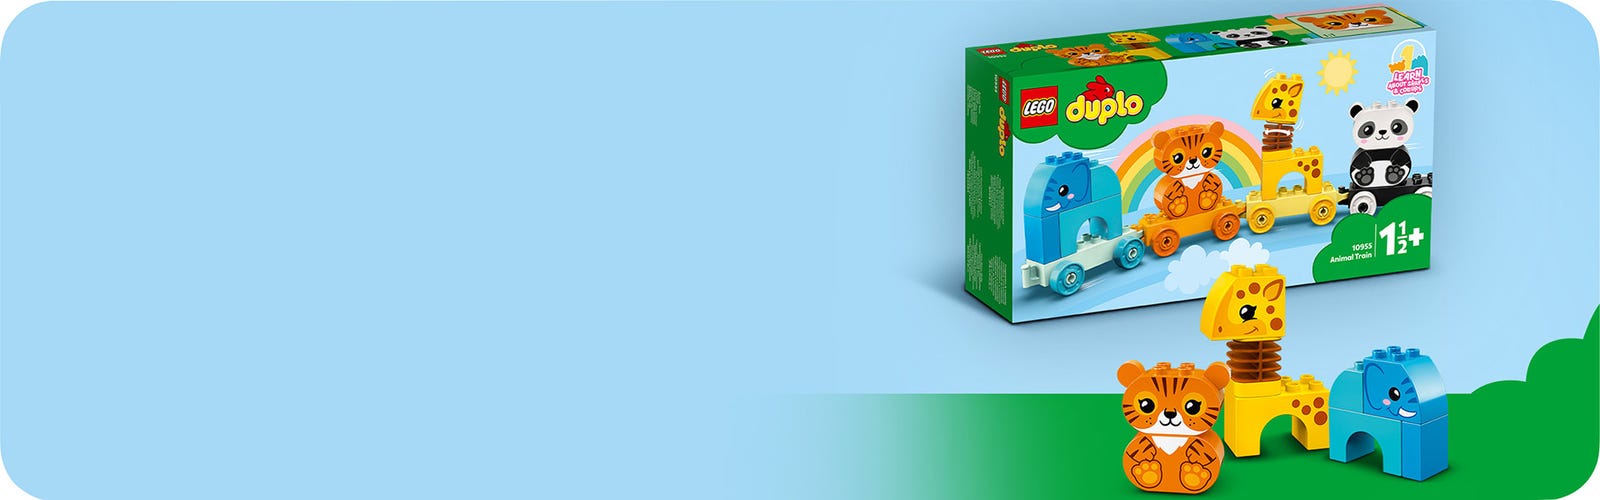 Lego DUPLO-Mon premier train animal 10955, jouets pour les tout-petits et  les enfants de 1.5 à 3 ans avec éléphant, tigre, Krasnoand girafe -  AliExpress